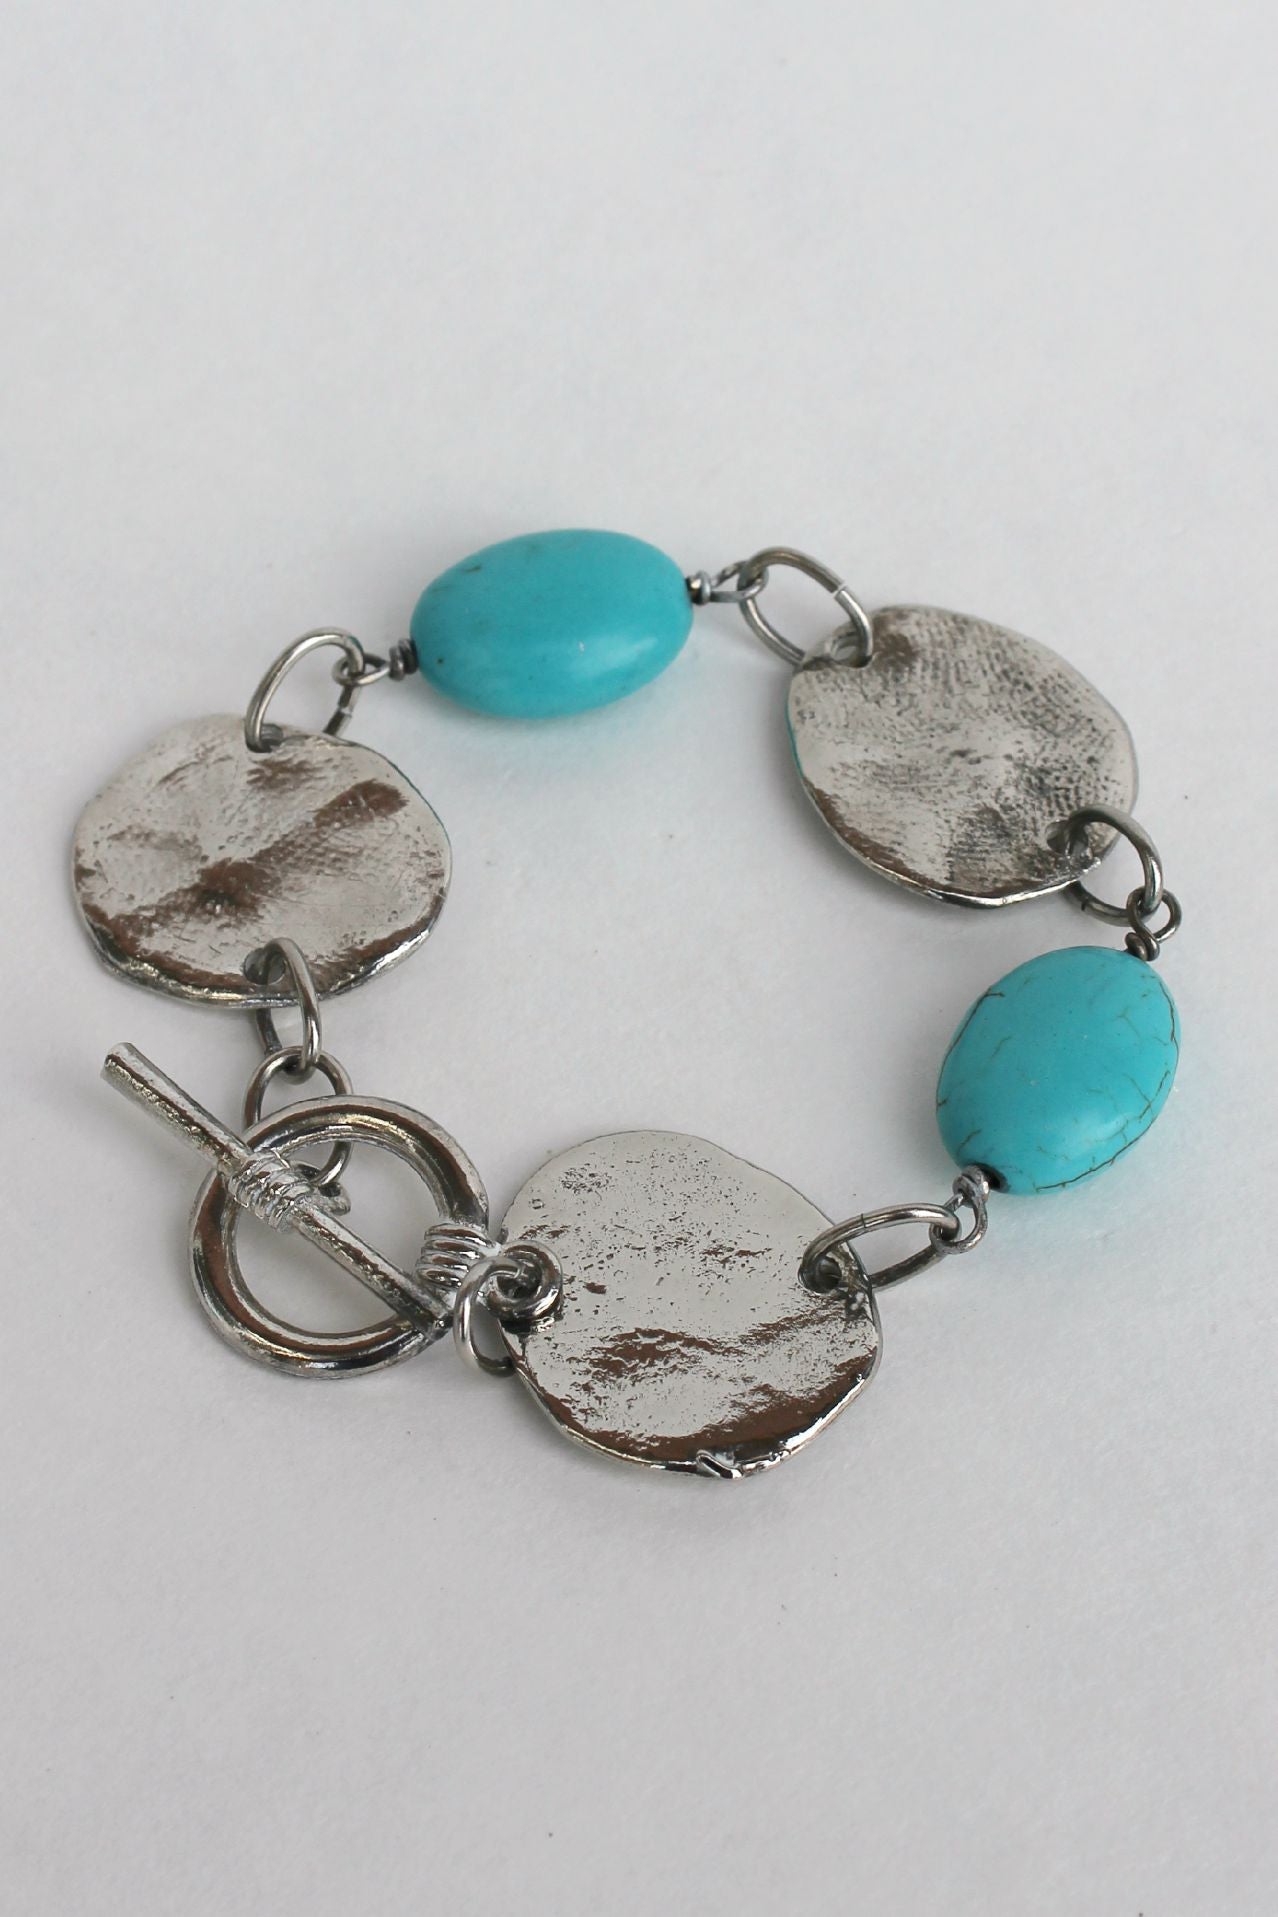 Susan Shaw: Handcast Bracelet, Sliver/Turquoise